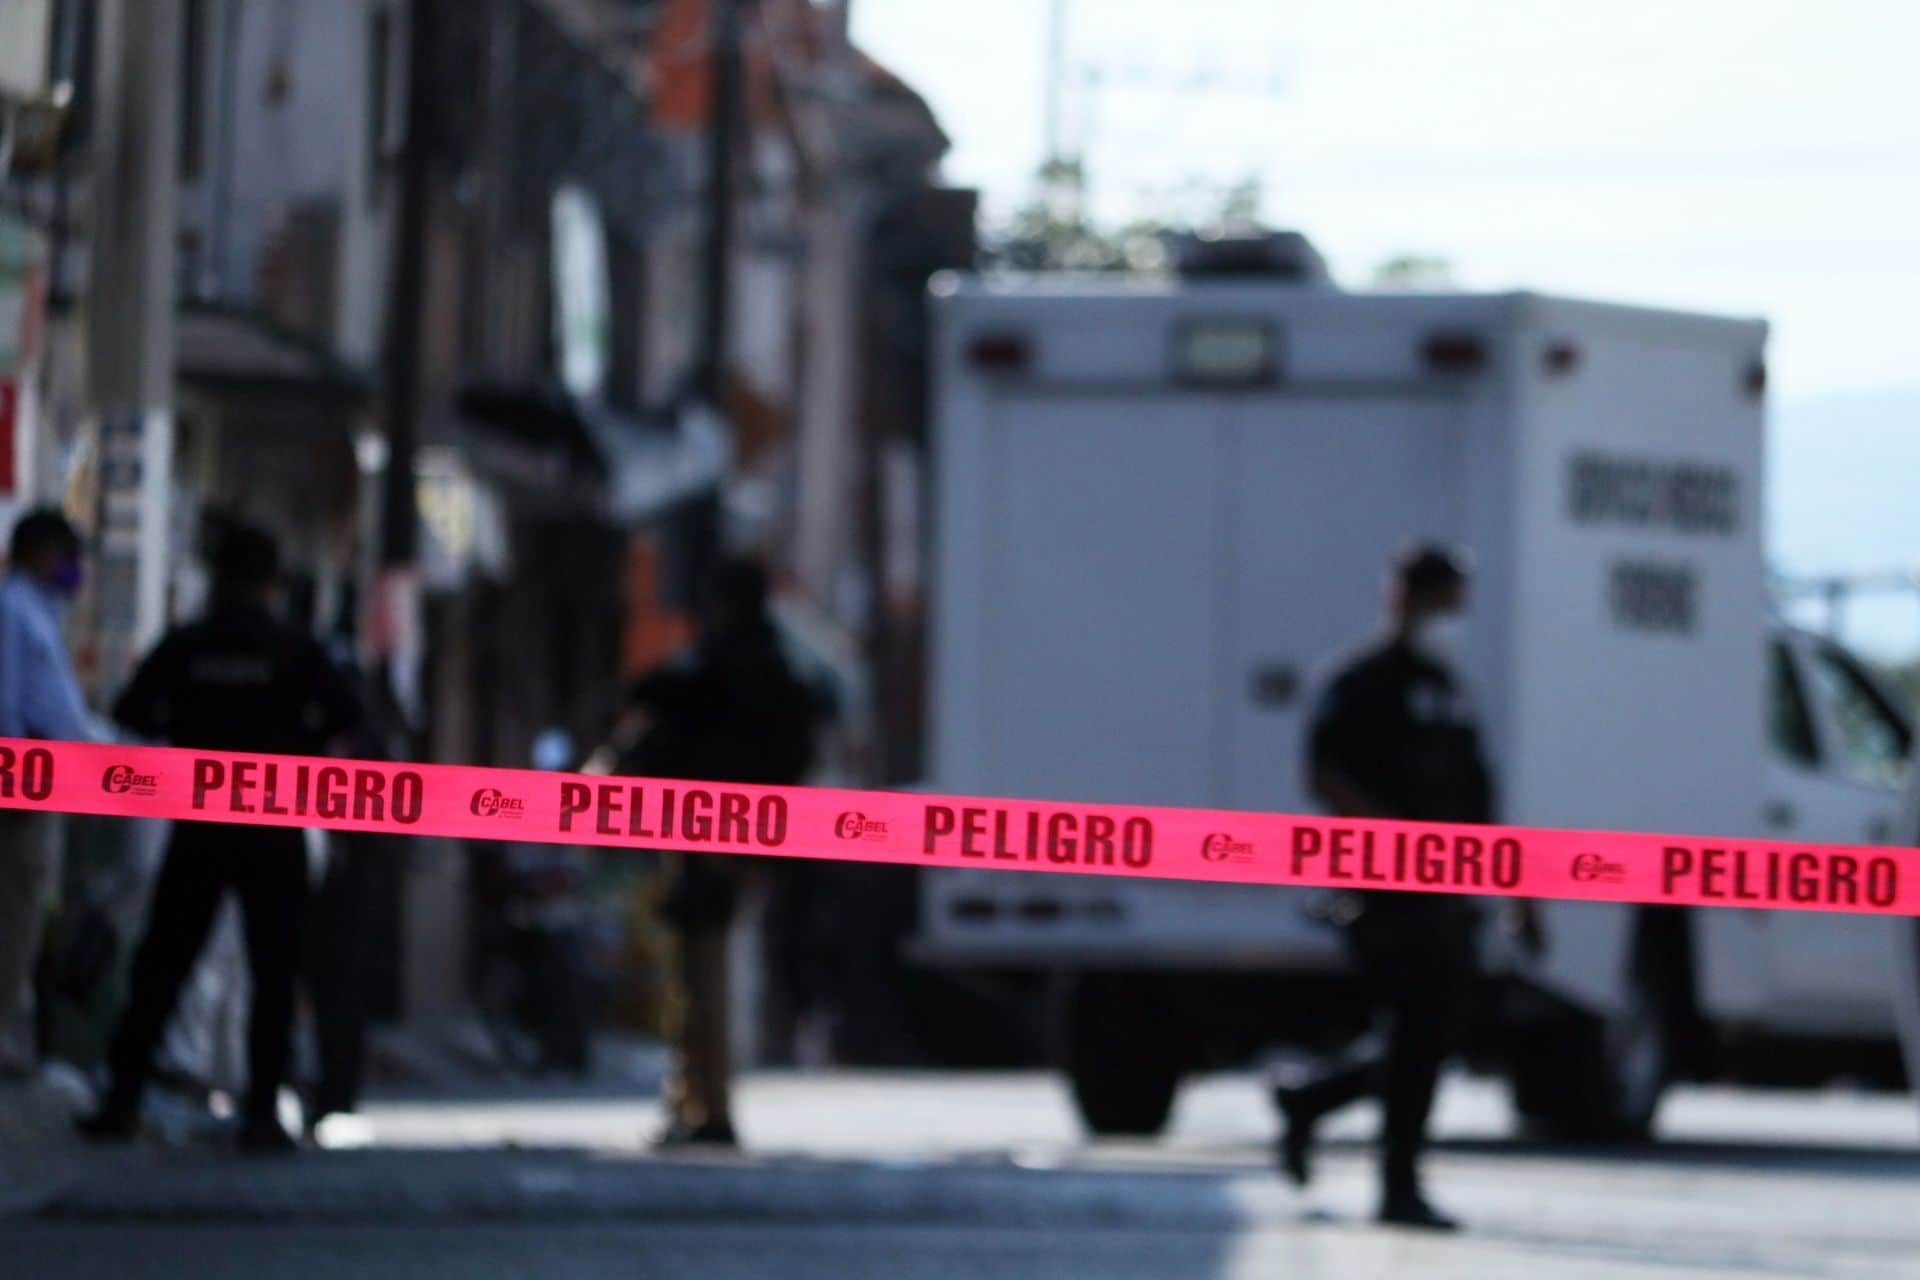 Peritos trabajan en una escena de crimen en México (Cuartoscuro)